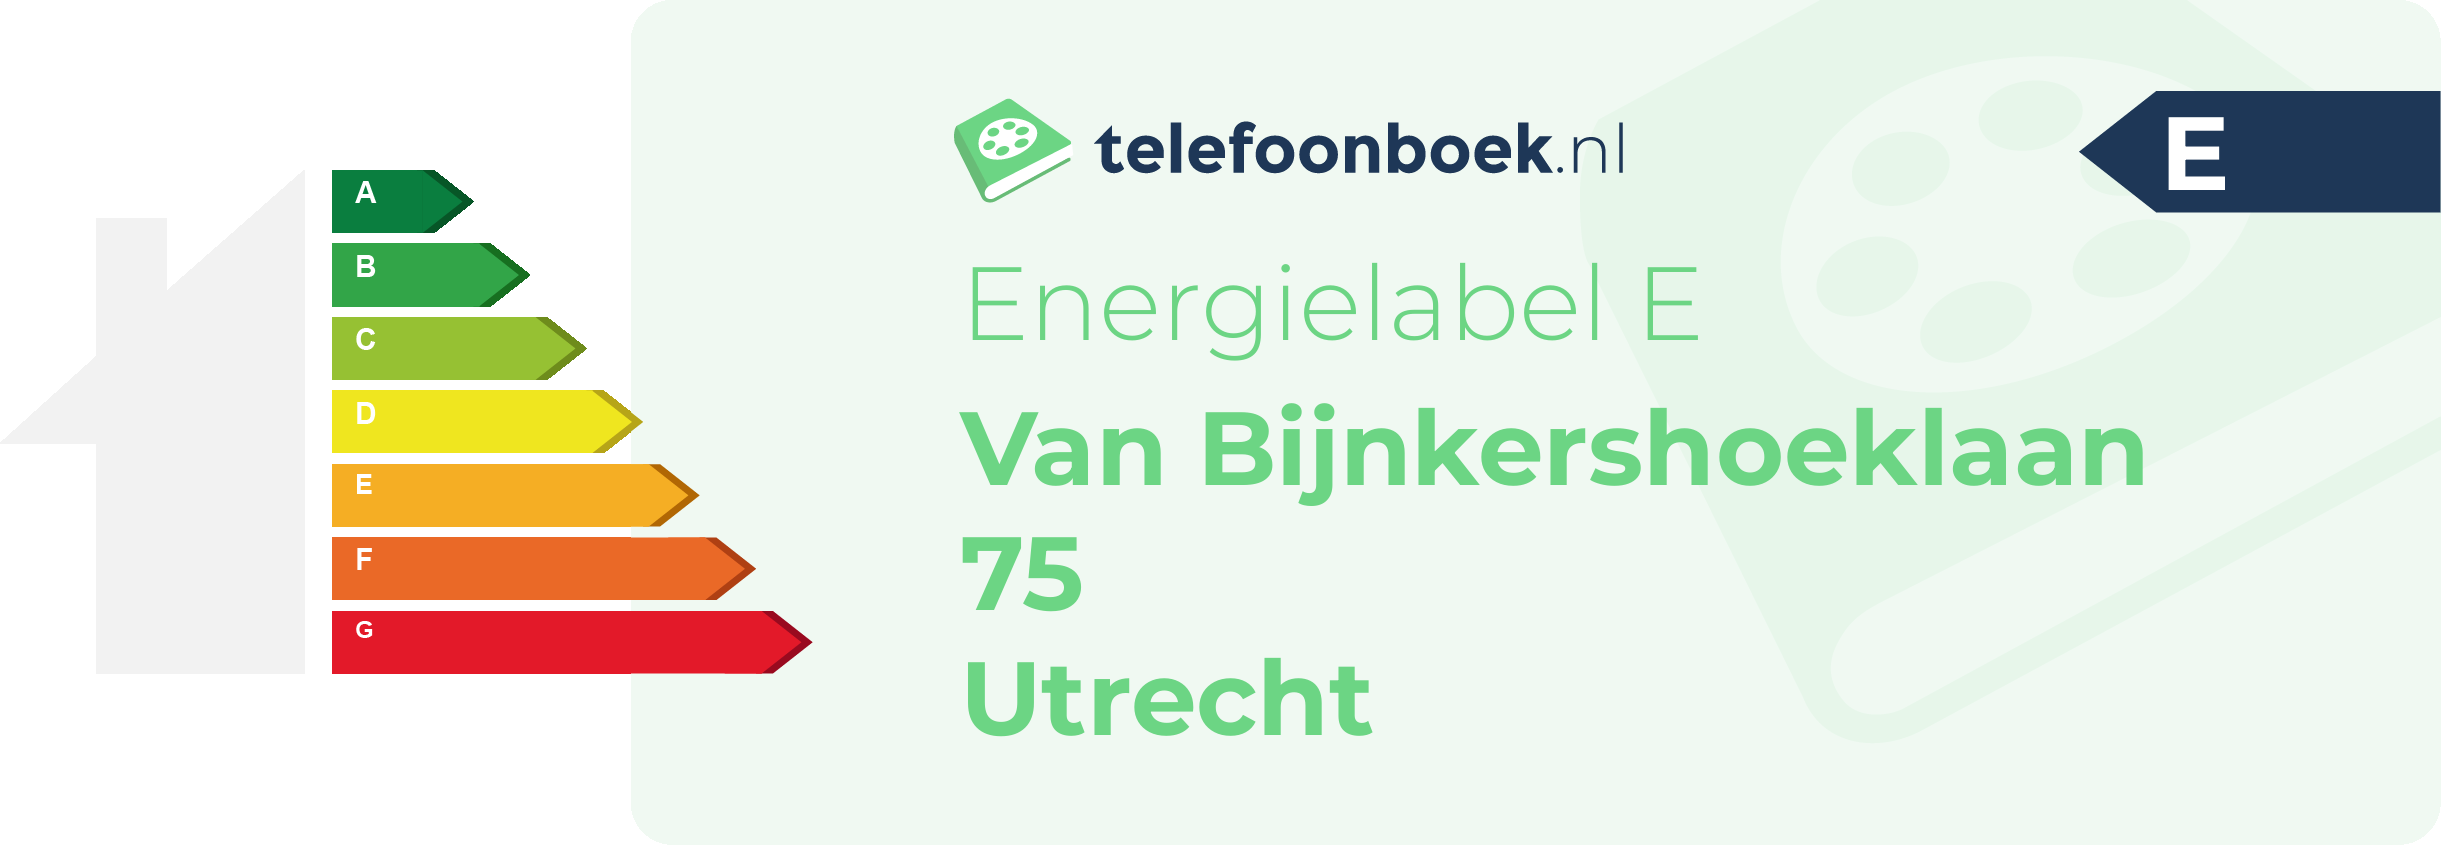 Energielabel Van Bijnkershoeklaan 75 Utrecht